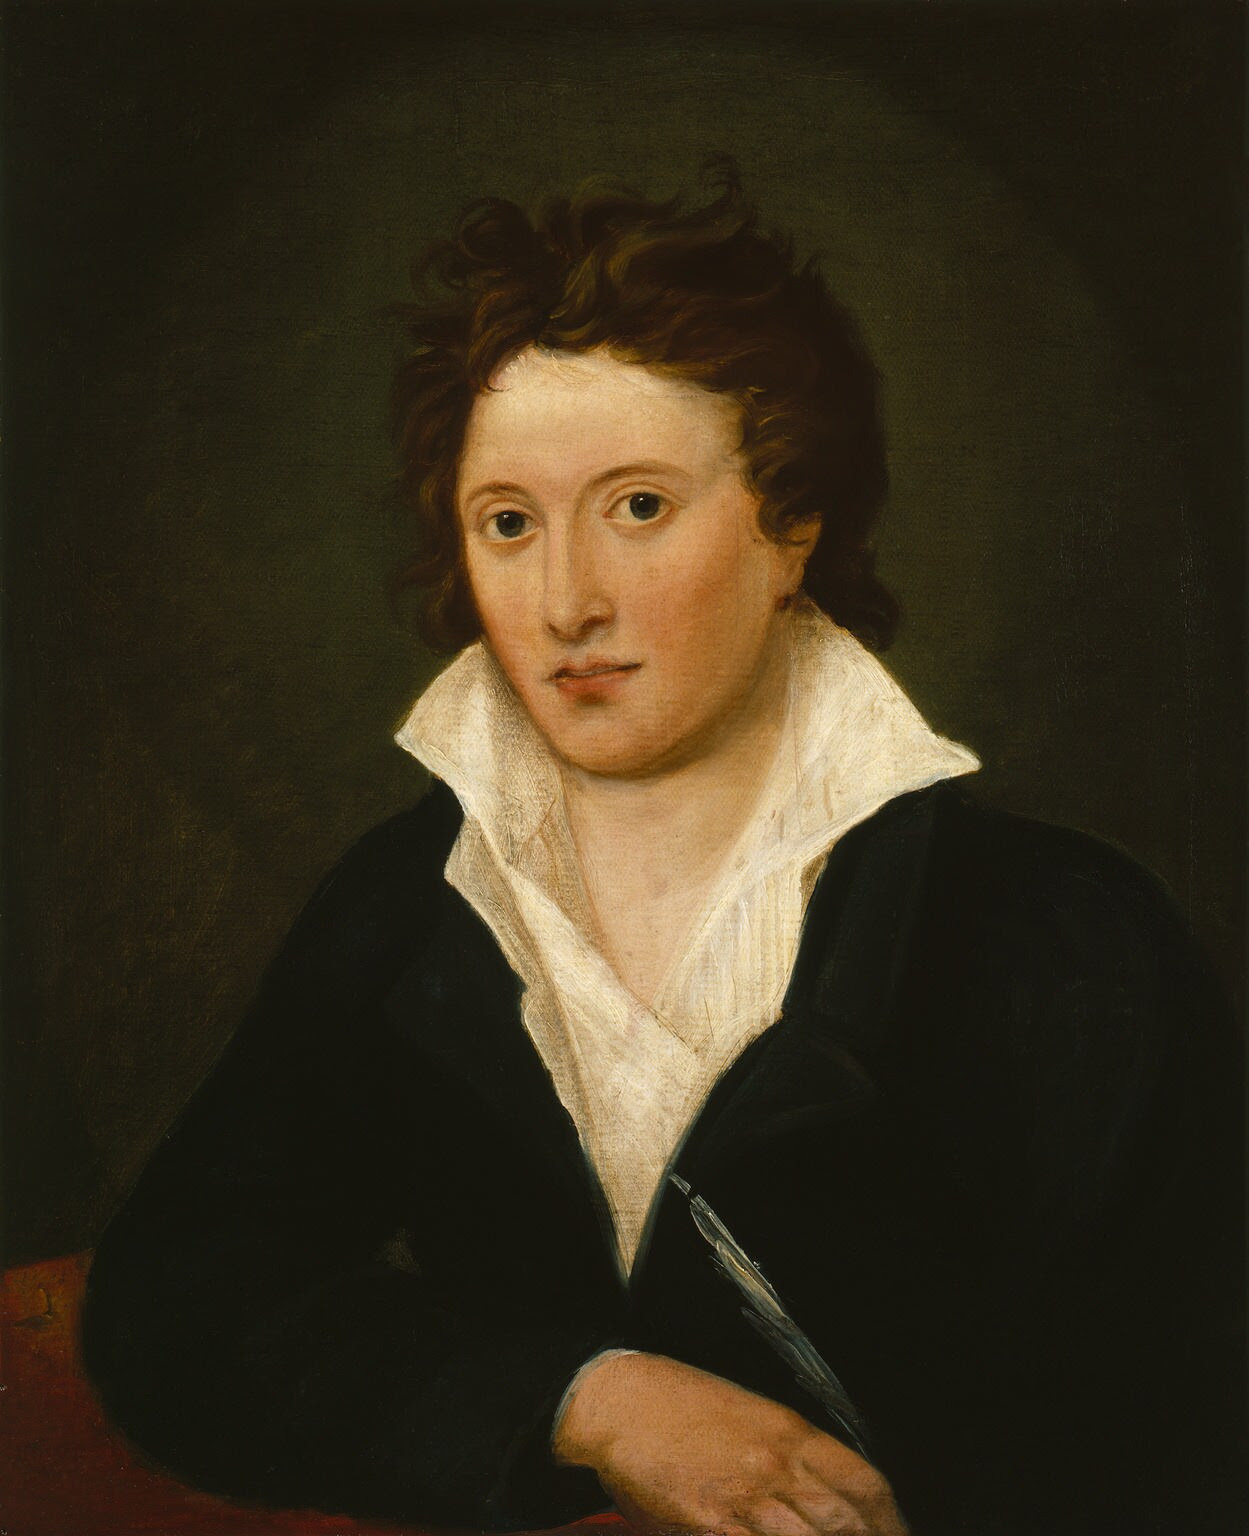 Arquivo: Retrato de Percy Bysshe Shelley por Curran, 1819.jpg